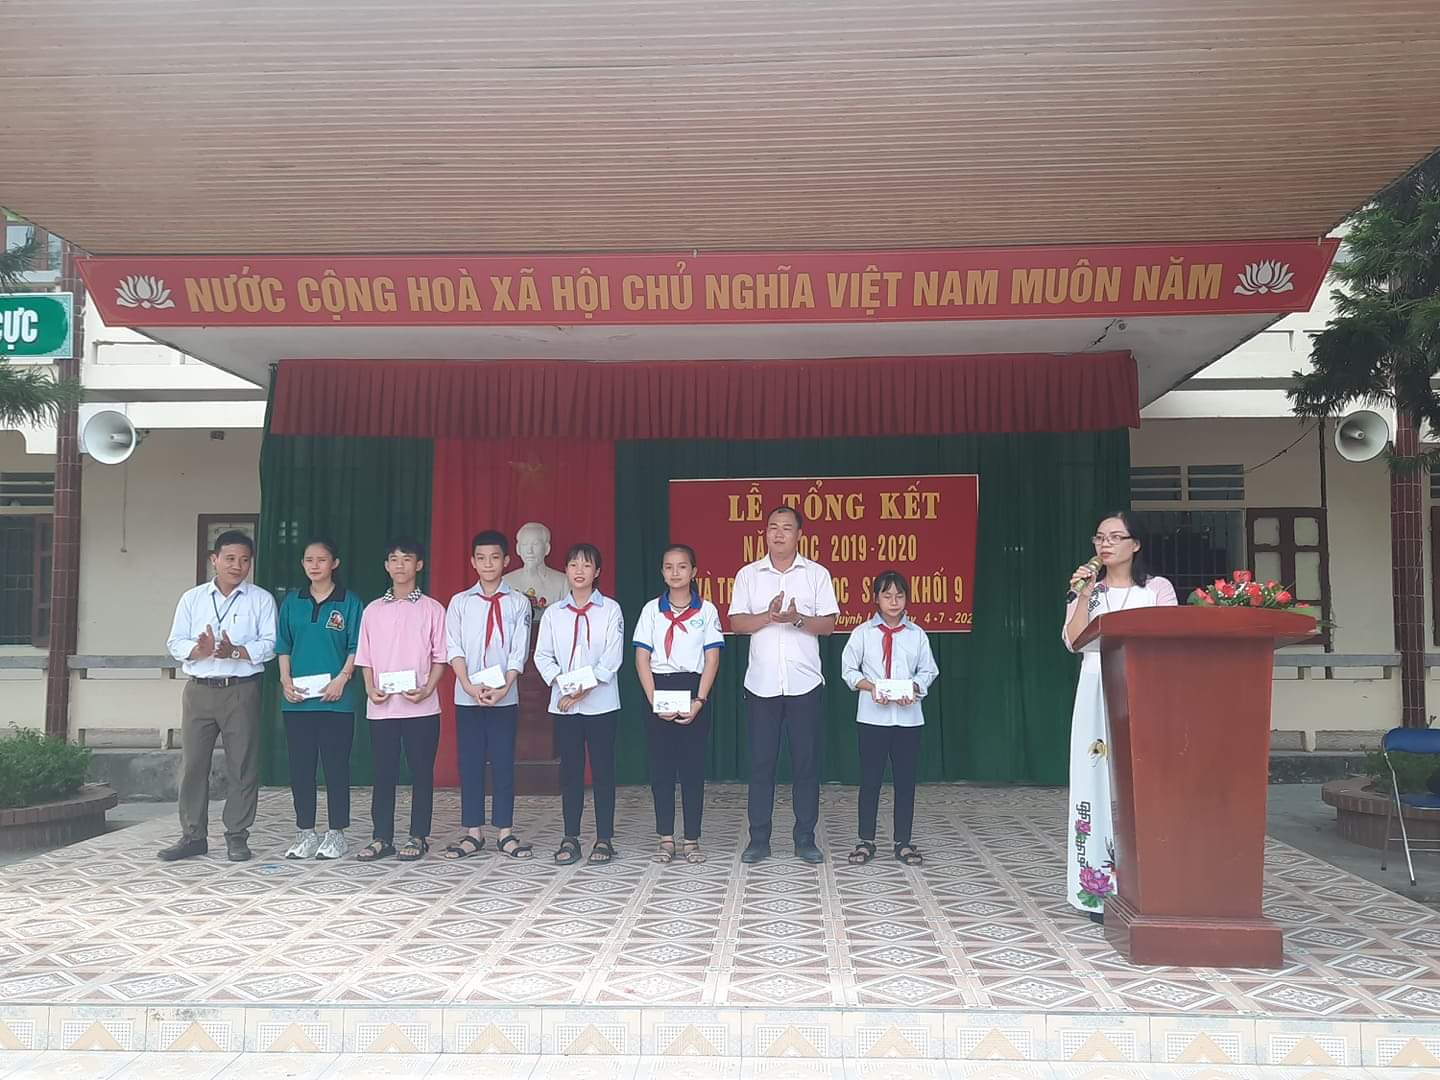 Đồng chí: Lê Tuấn Anh - Thị ủy viên - Bí thư Đảng ủy xã đến dự và trào thưởng cho học sinh có thành tích xuất sắc trong năm học